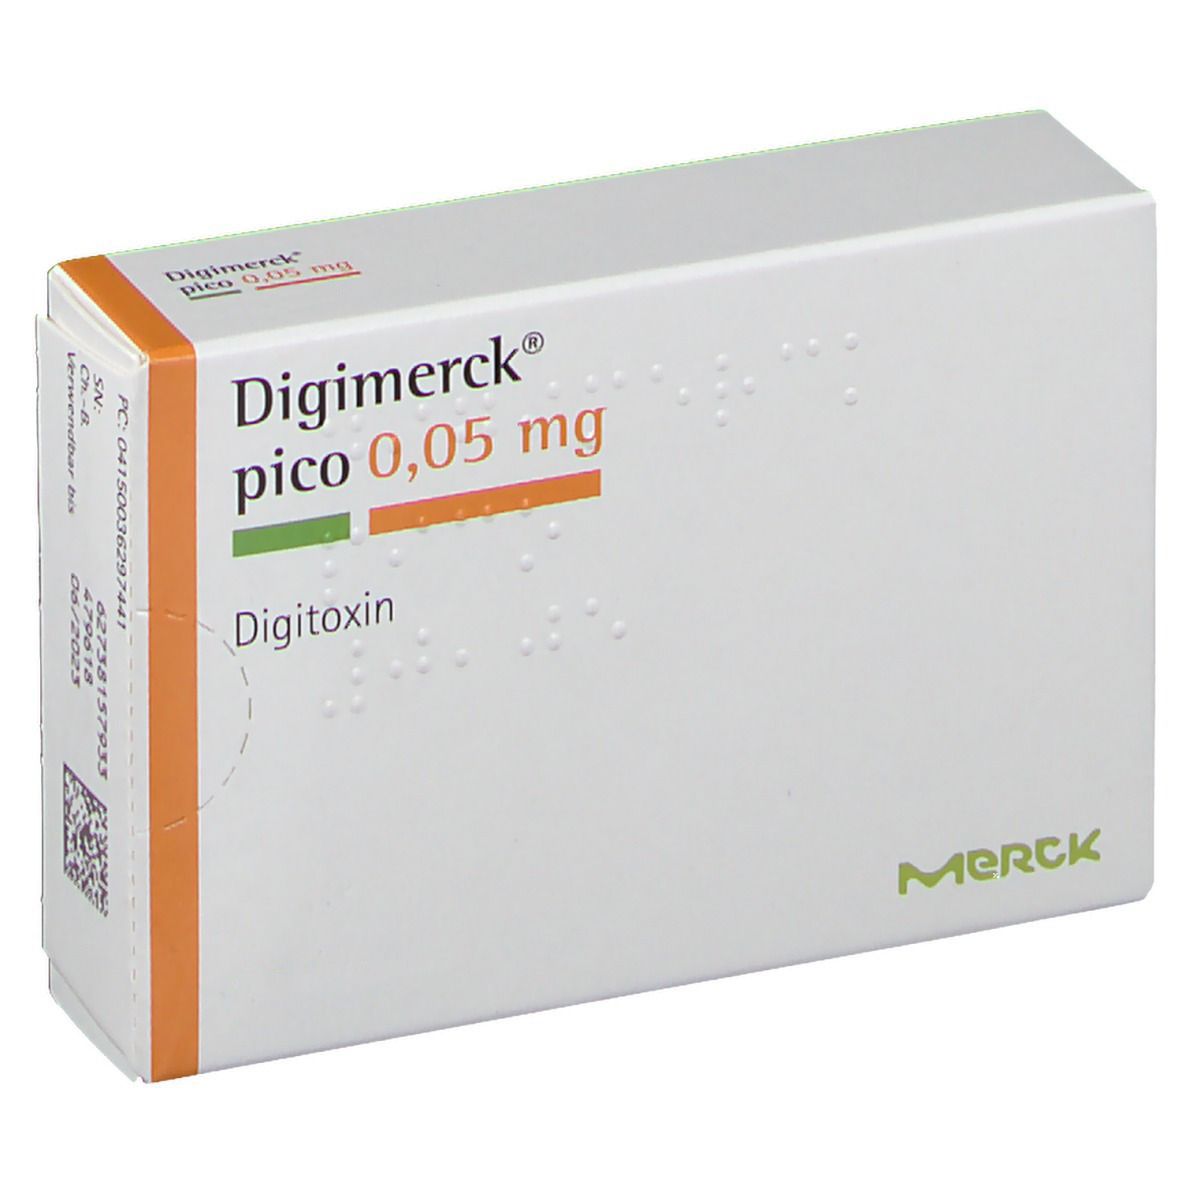 Digimerck® pico 0,05 mg